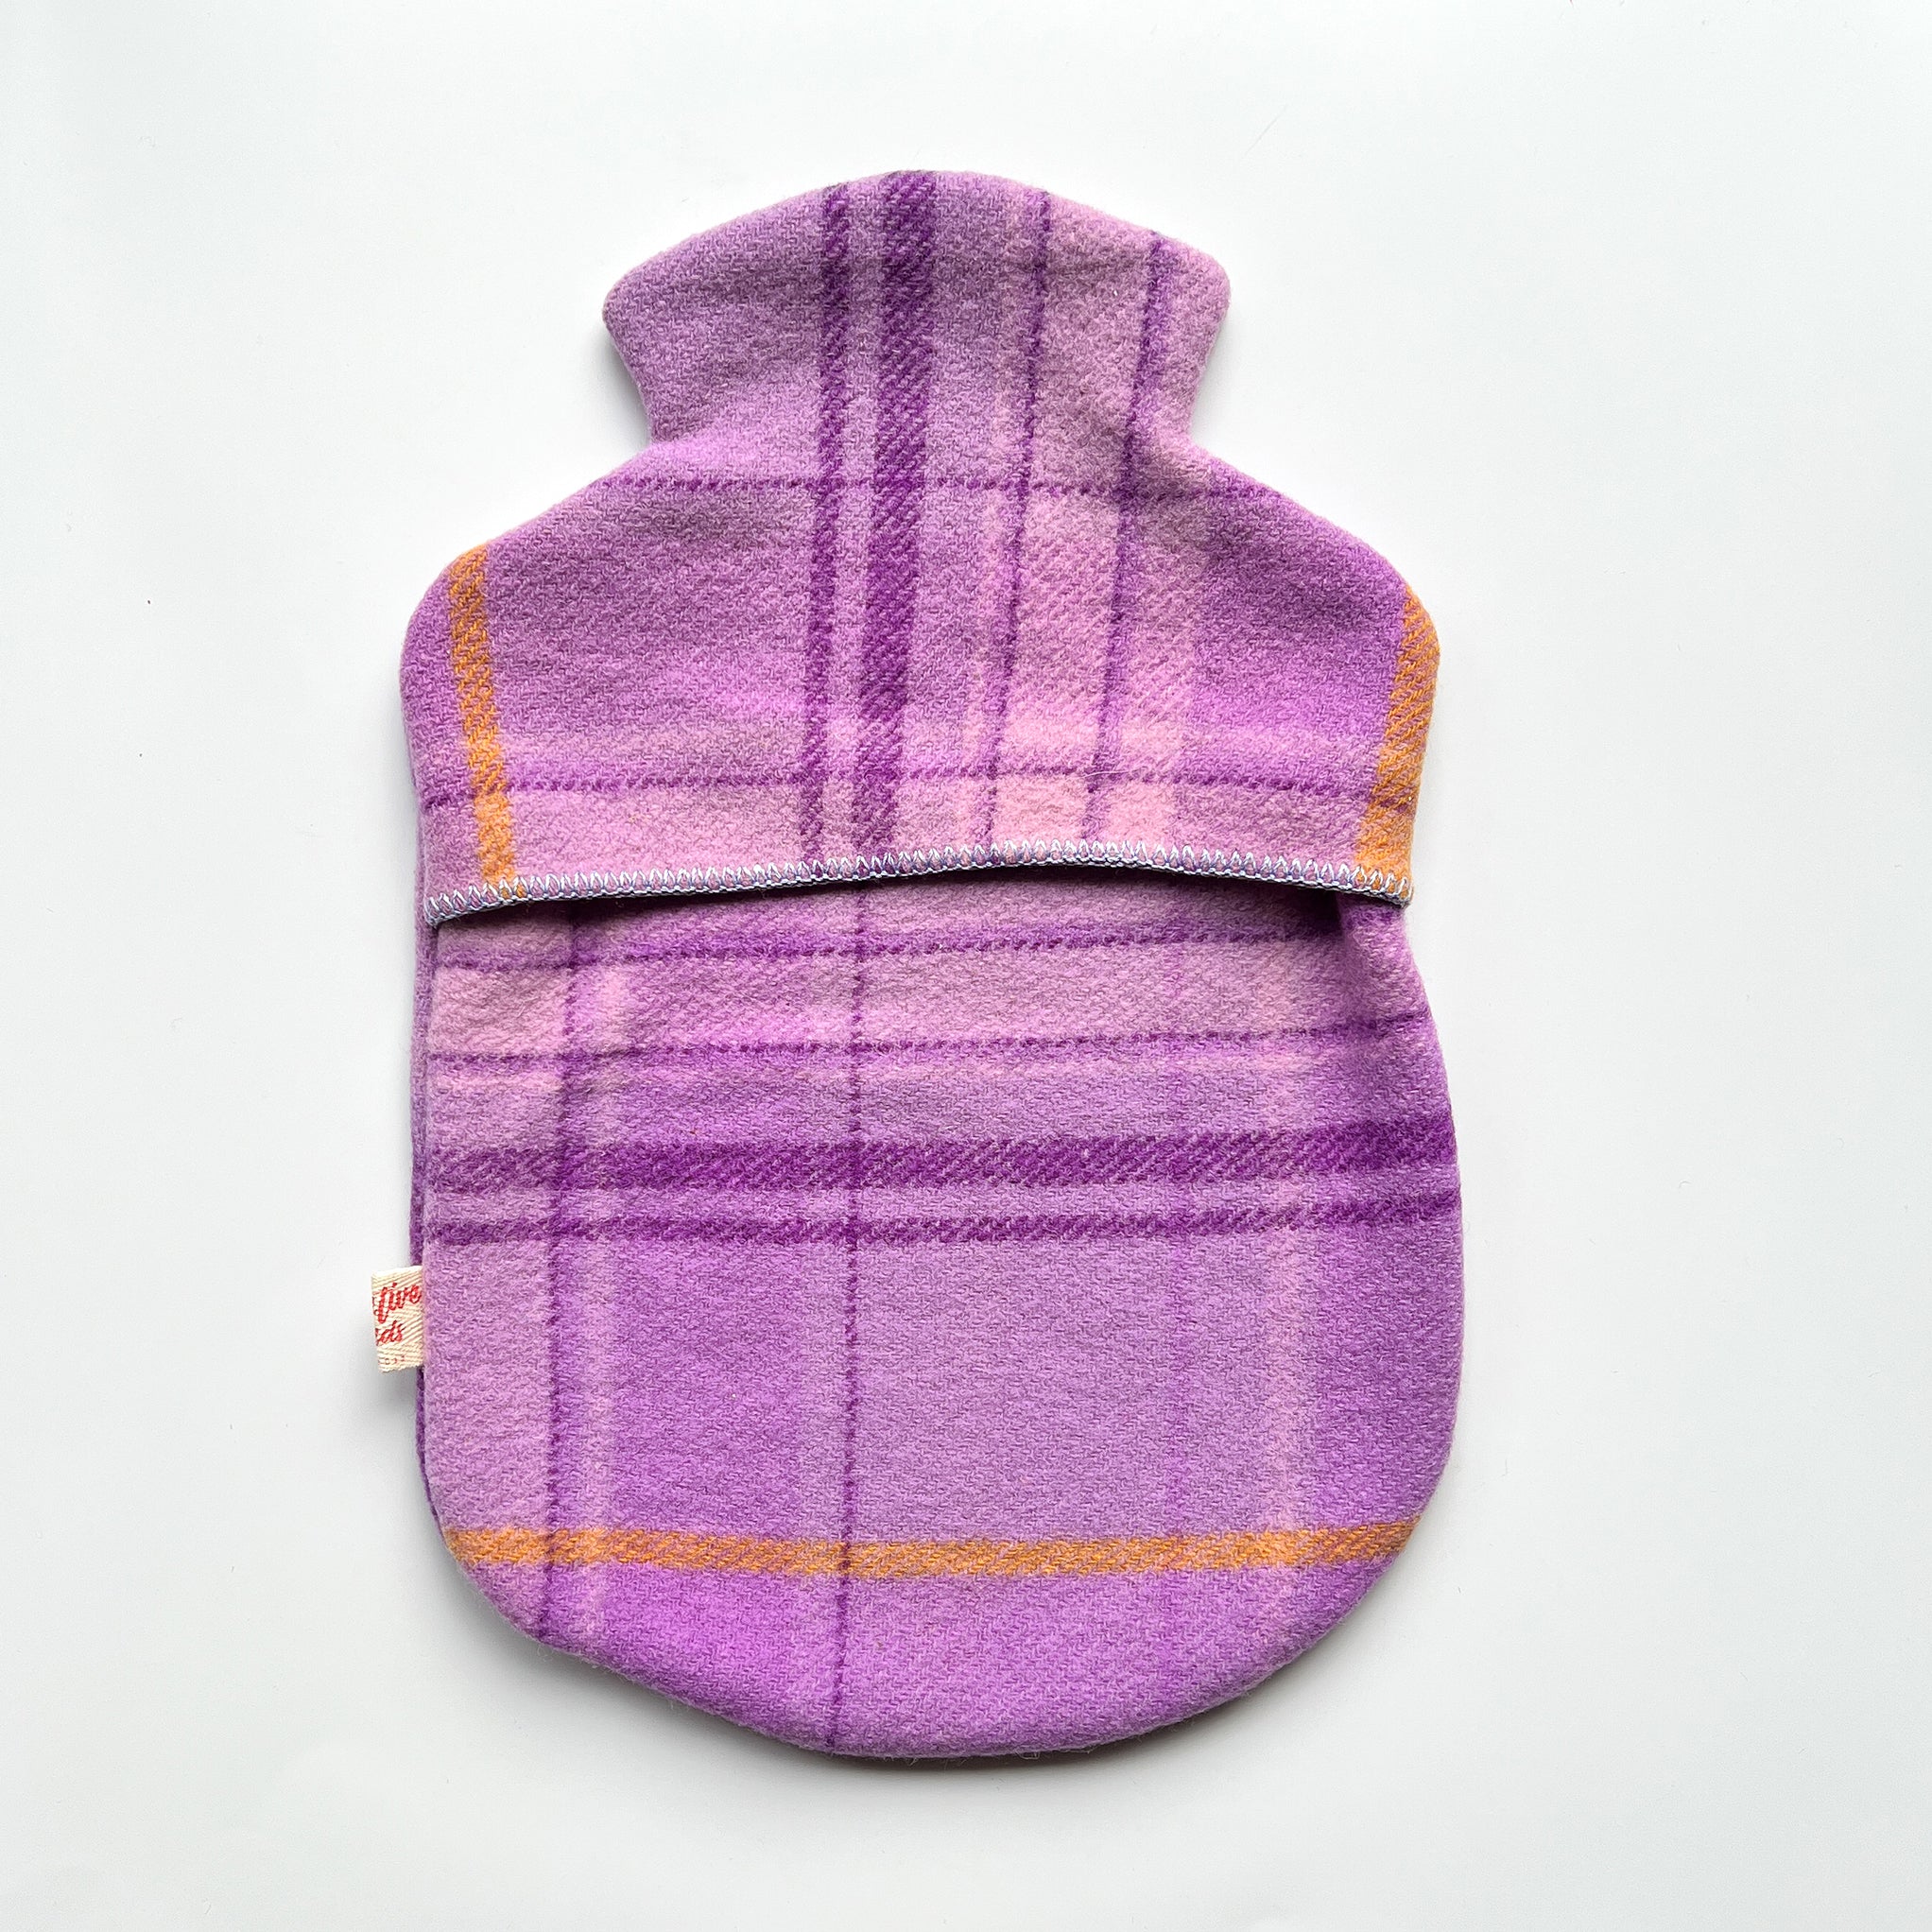 Purple woollen hot water bottle cover